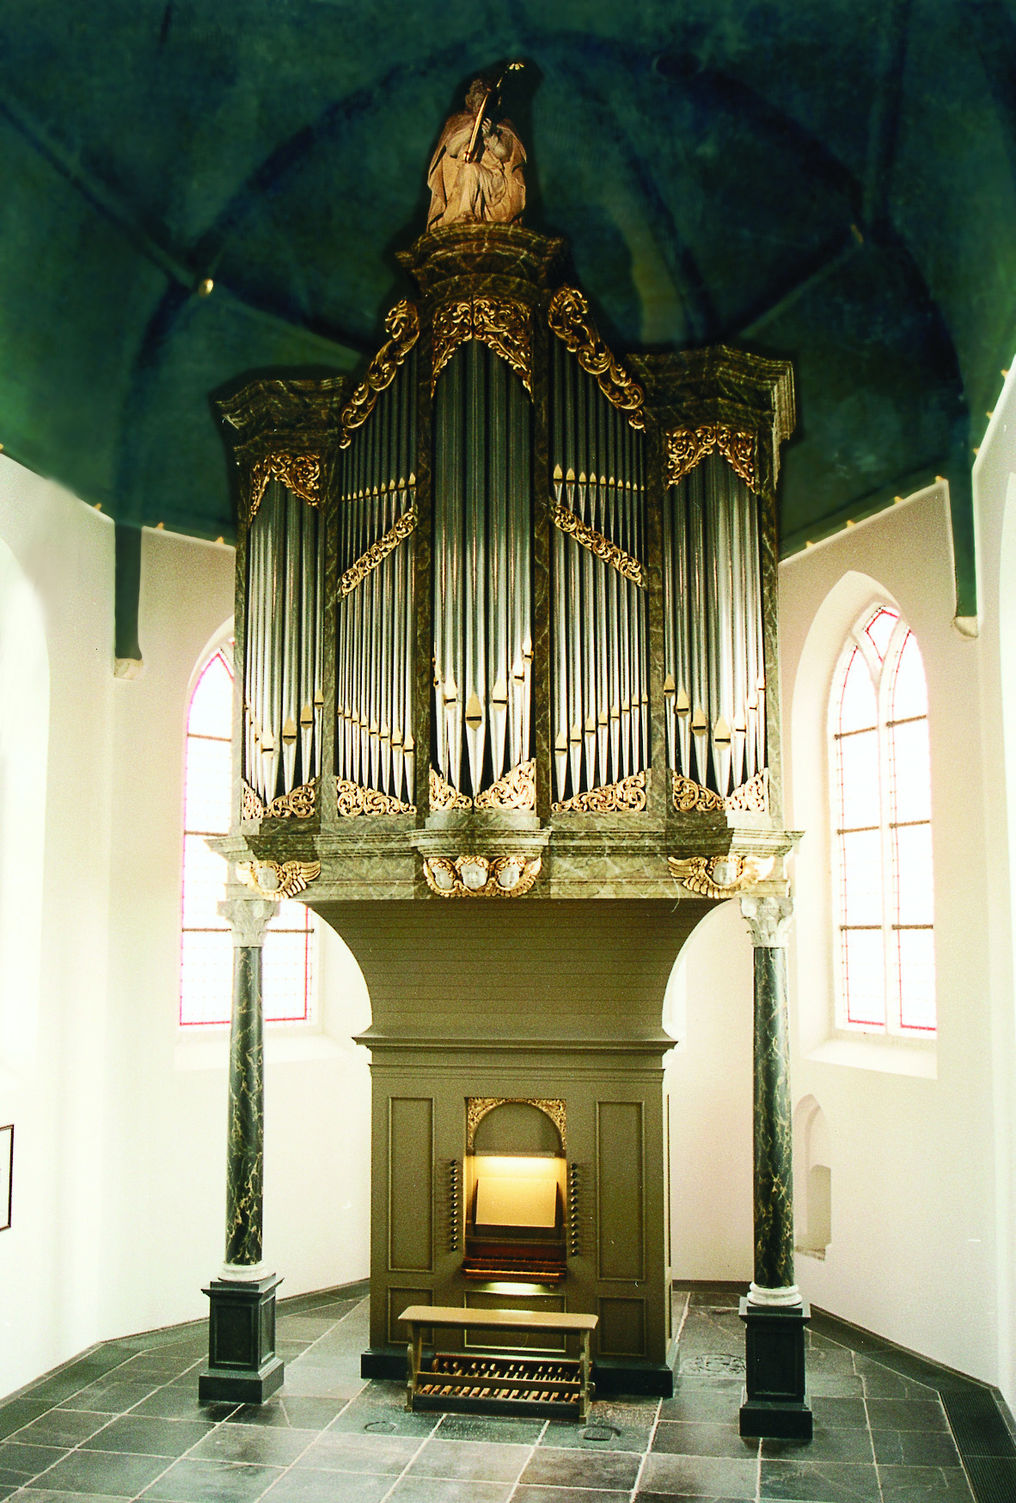 duyschot orgel kleur